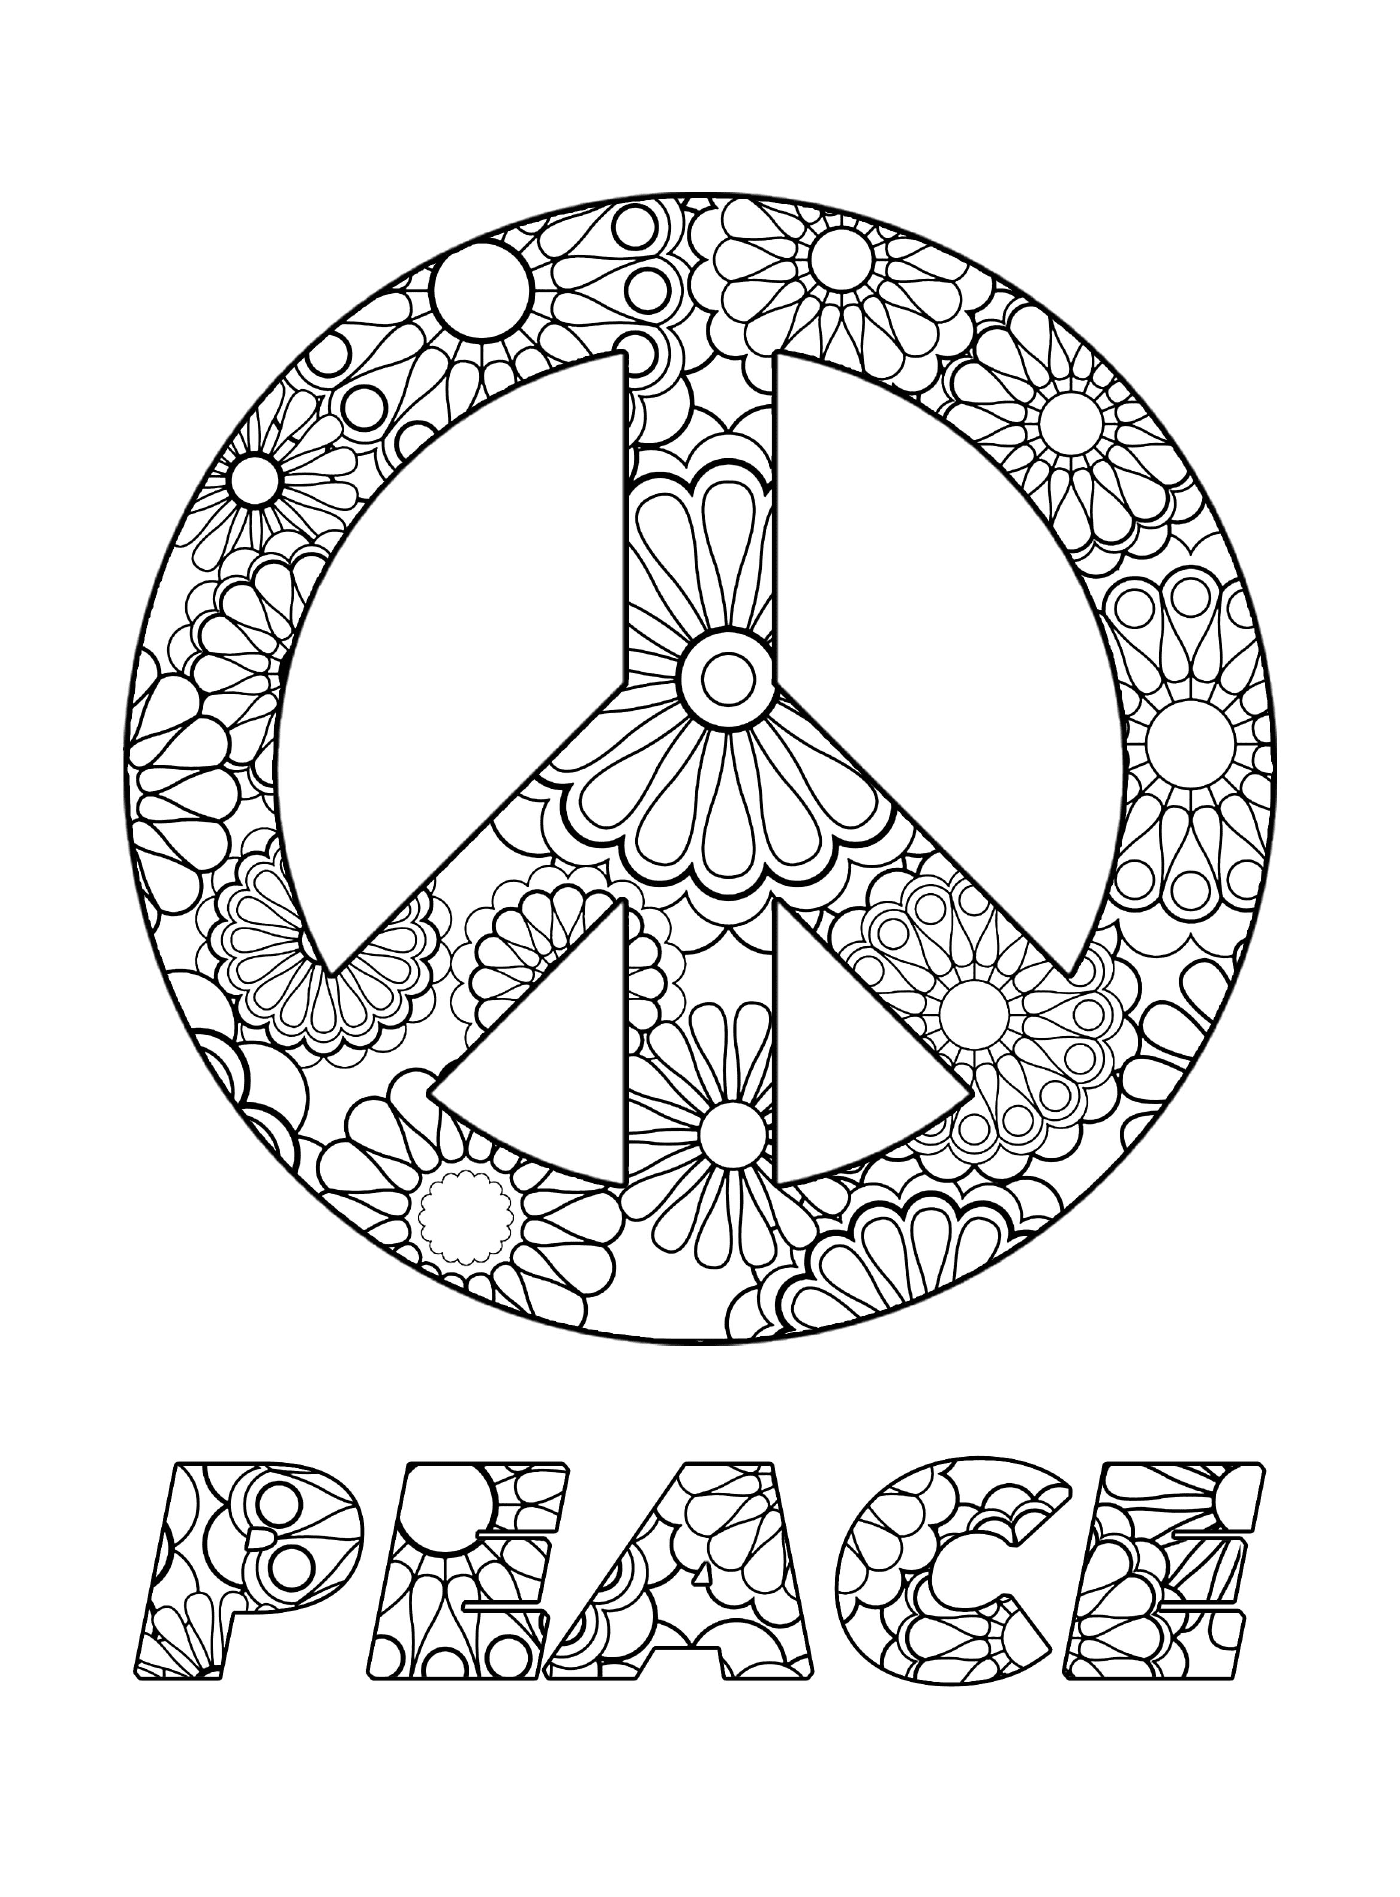  Simbolo della pace con i fiori 